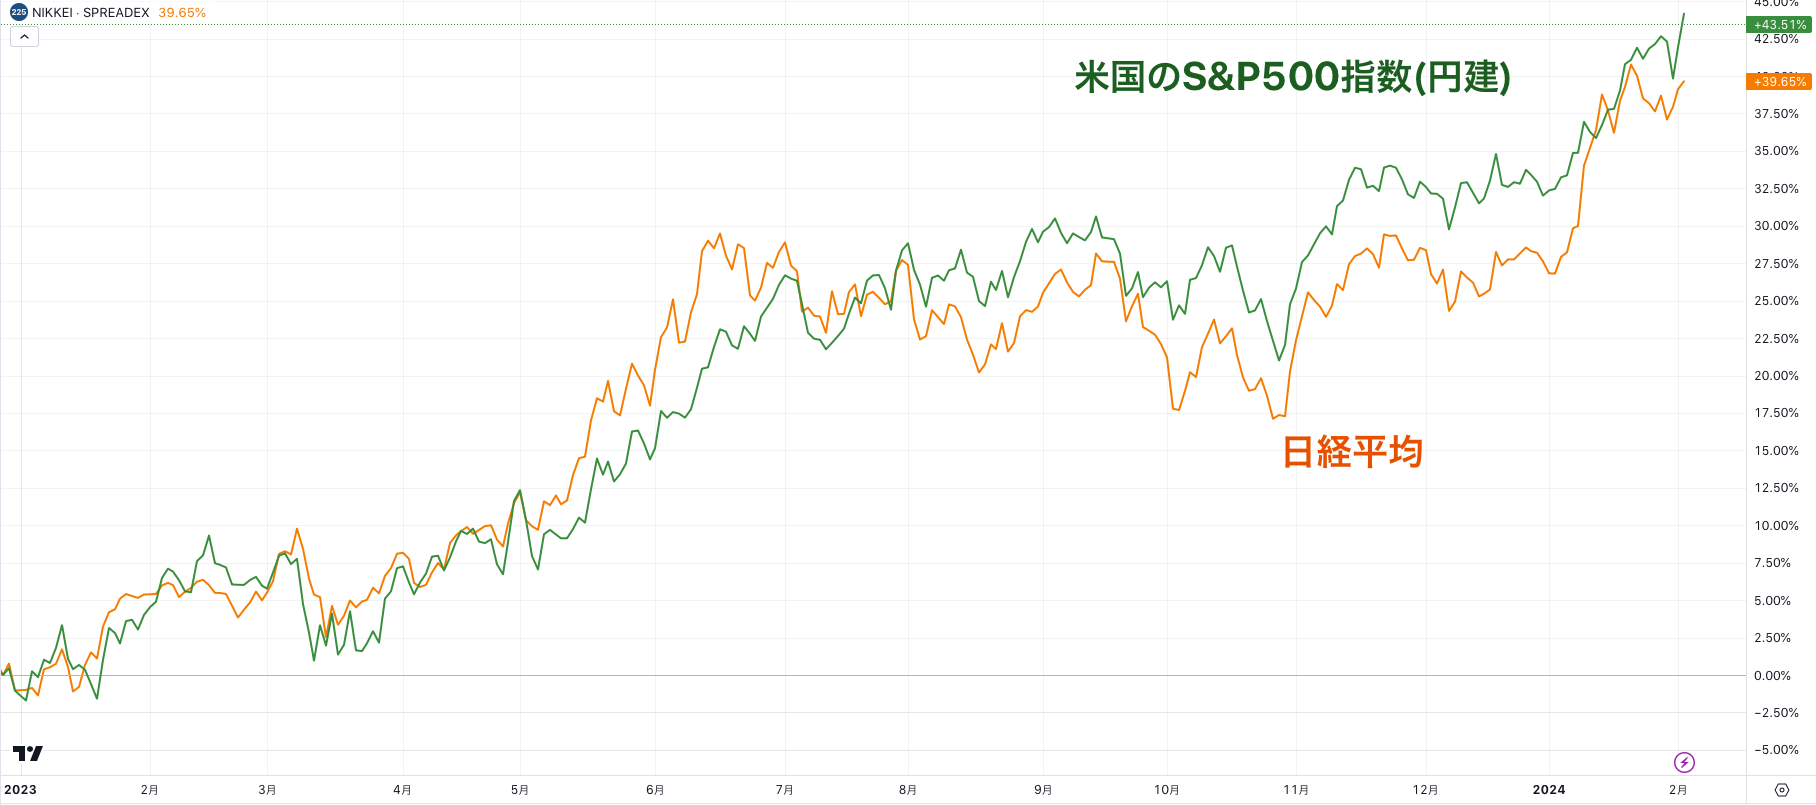 日経平均と円建てのS&P500指数はほぼ連動